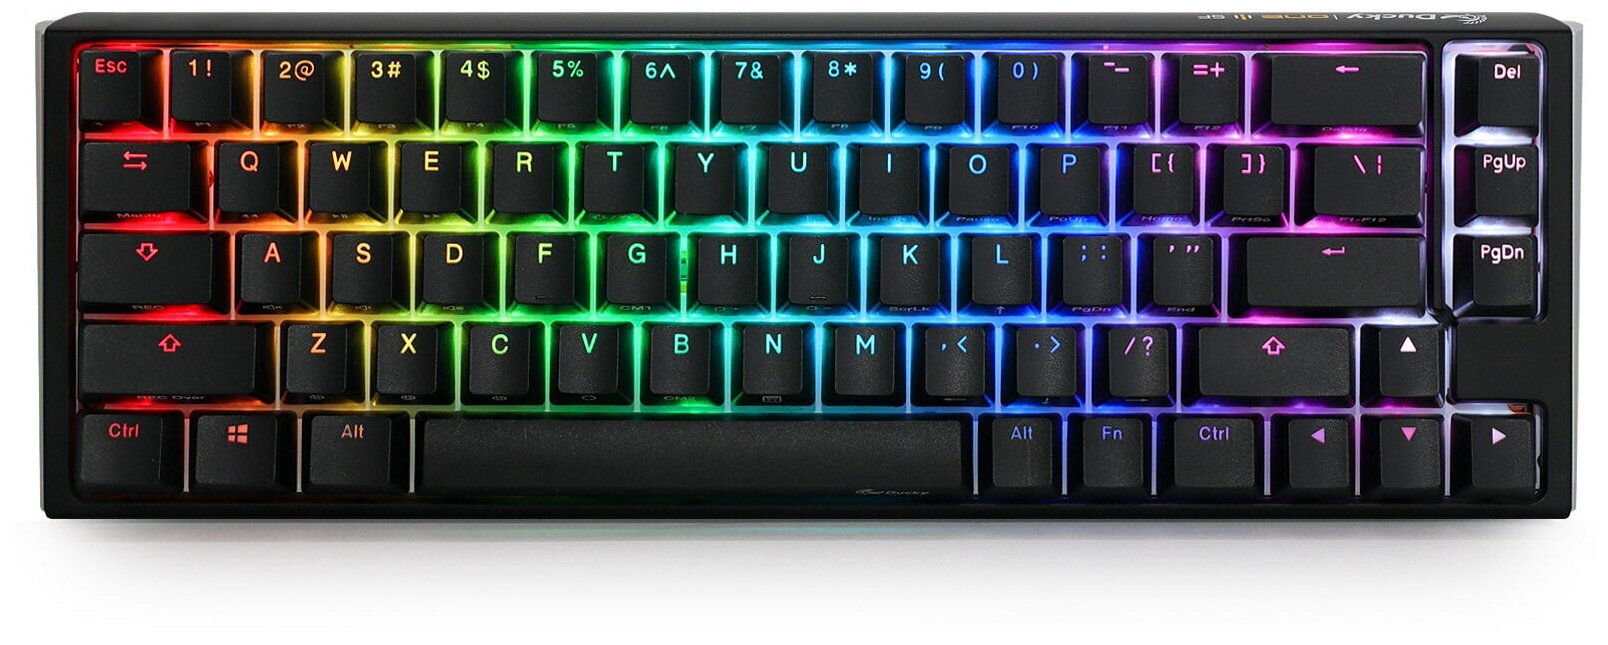 Игровая механическая клавиатура Ducky One 3 SF Black переключатели Cherry MX RGB Clear, русская раскладка